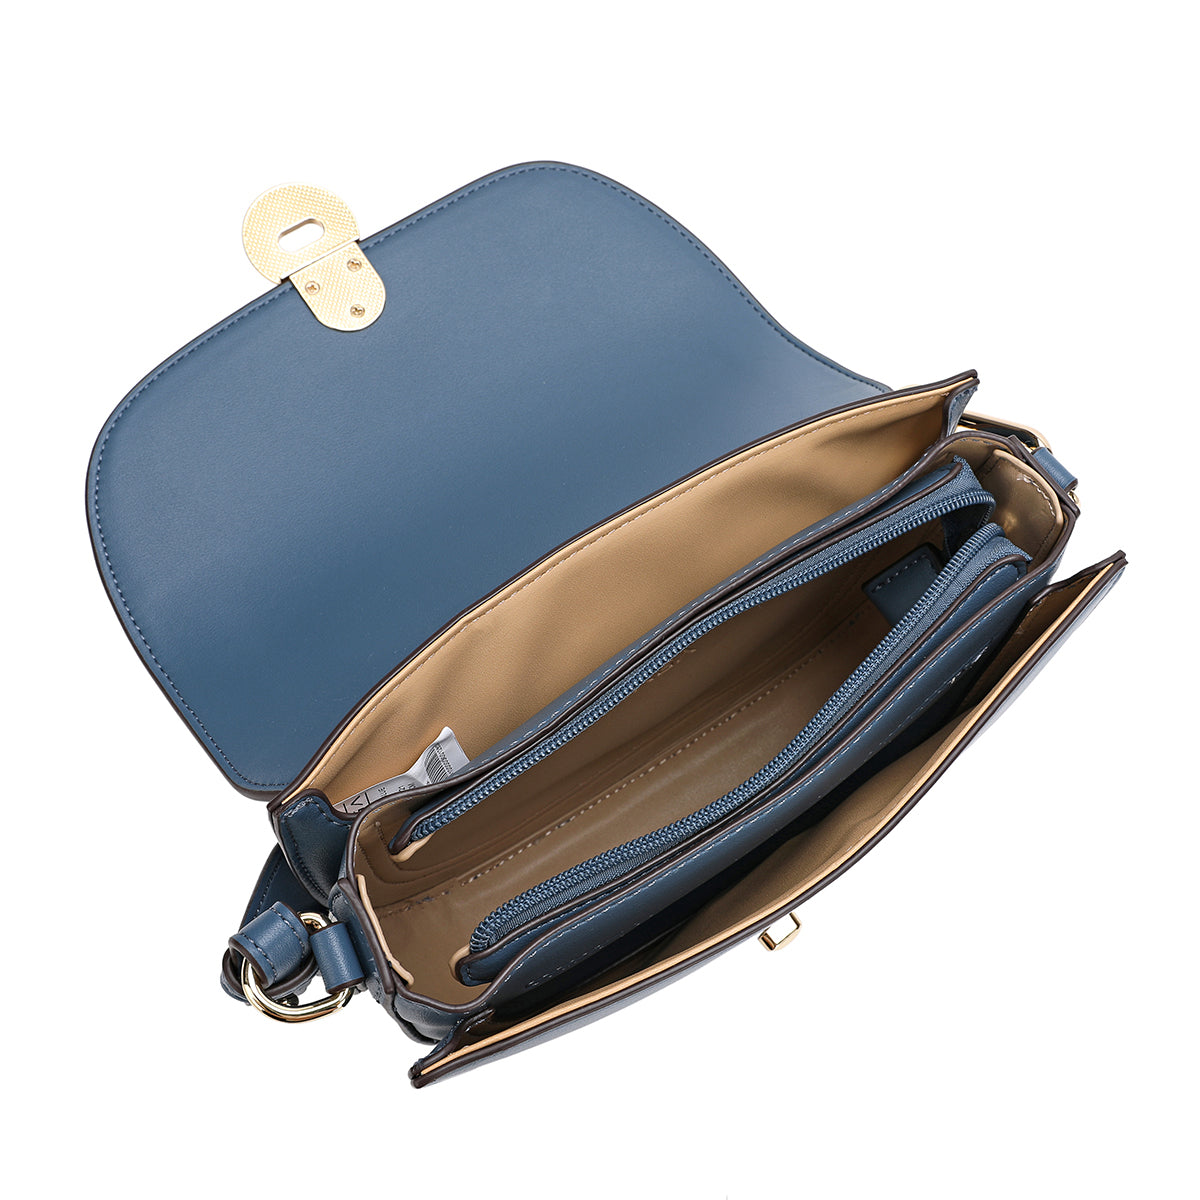 حقيبة كروس نسائية أنيقة من ساغا عرض 22سم لون أزرق أو أحمر مارون